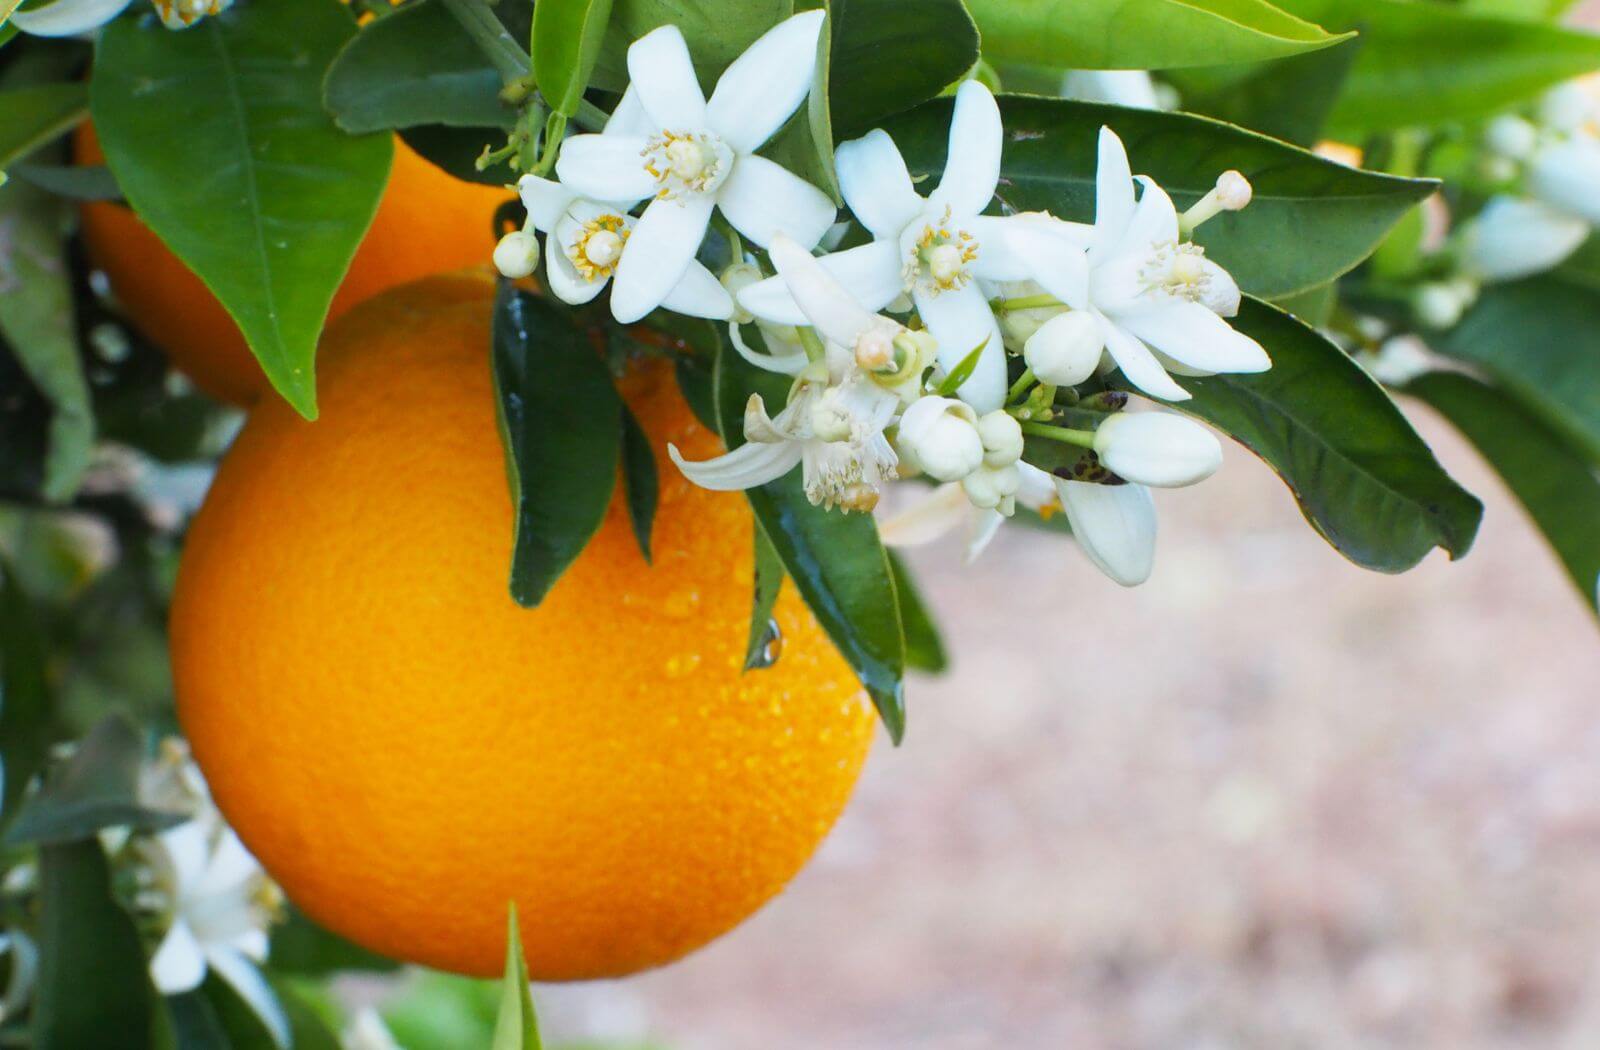 Orangenblüte mit entspannender Wirkung auf das Nervensystem und zur Beruhigung